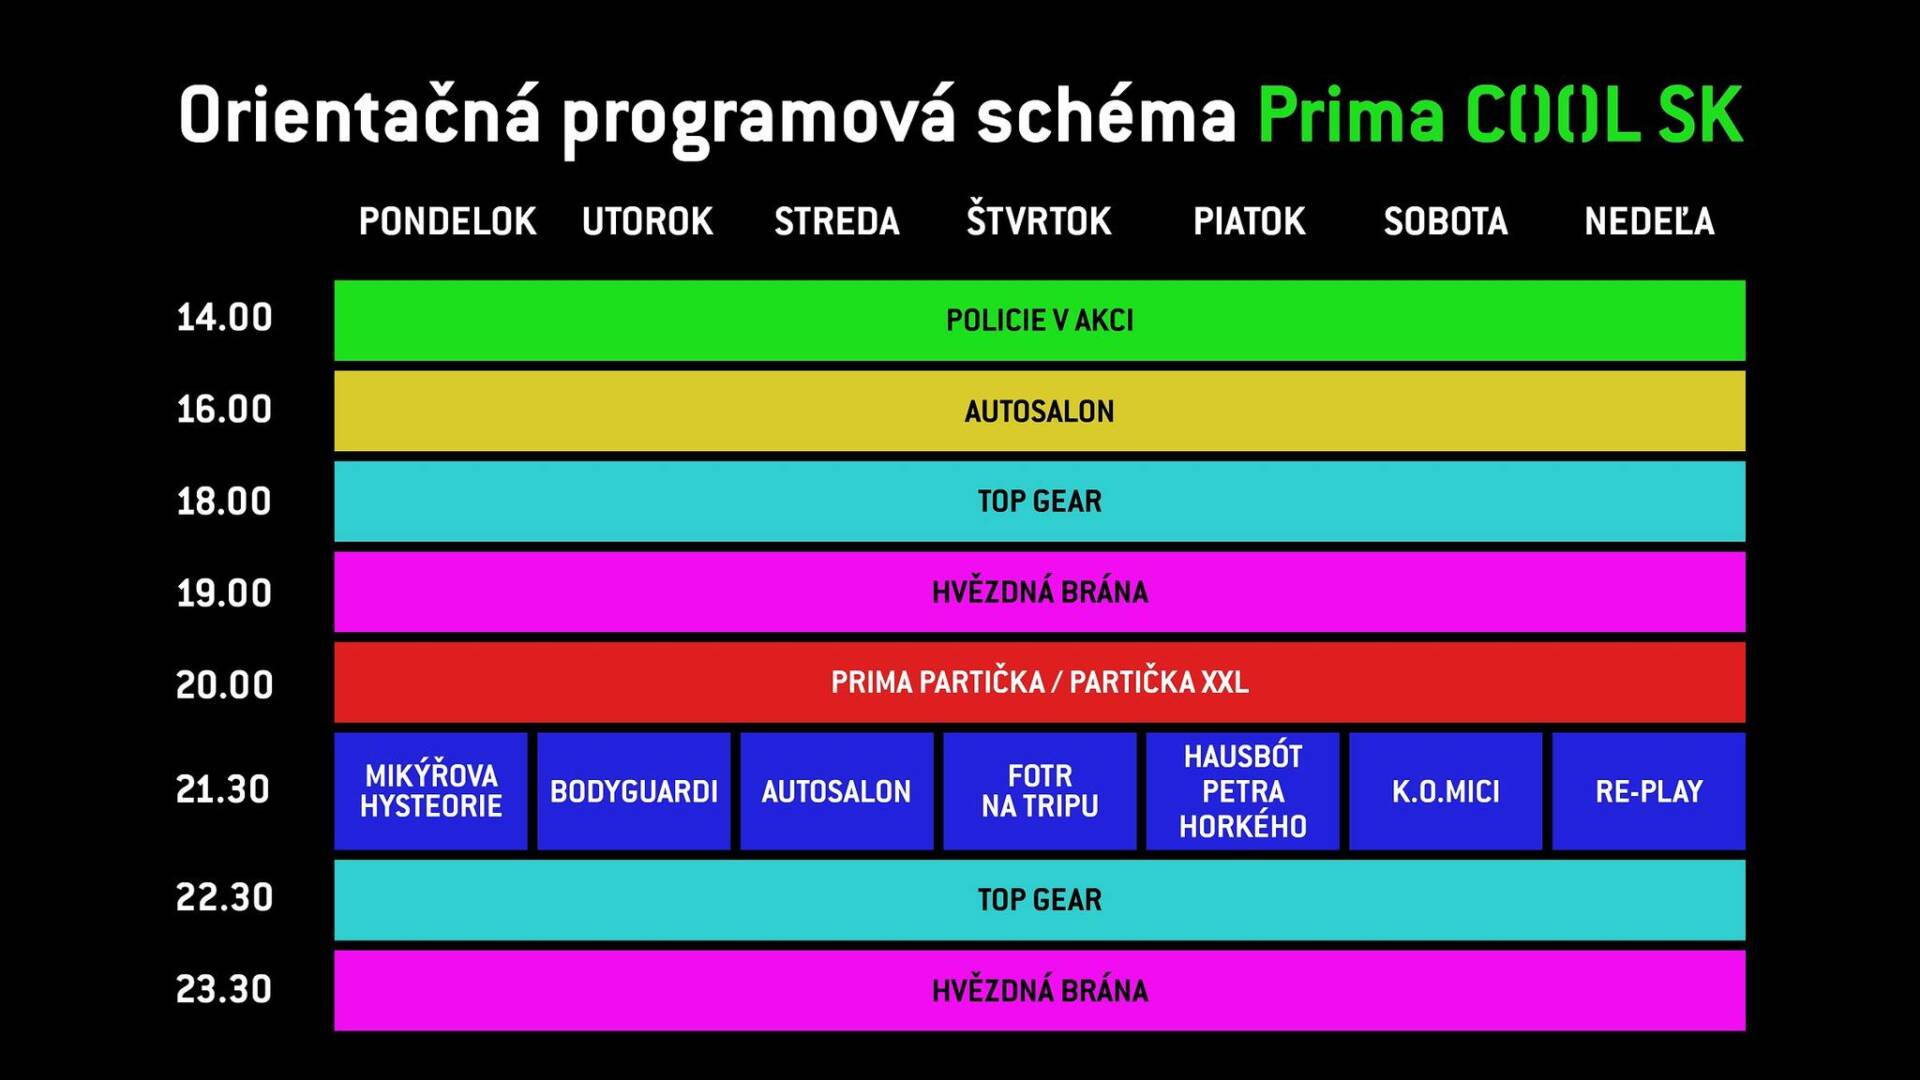 Prima Cool Sk program